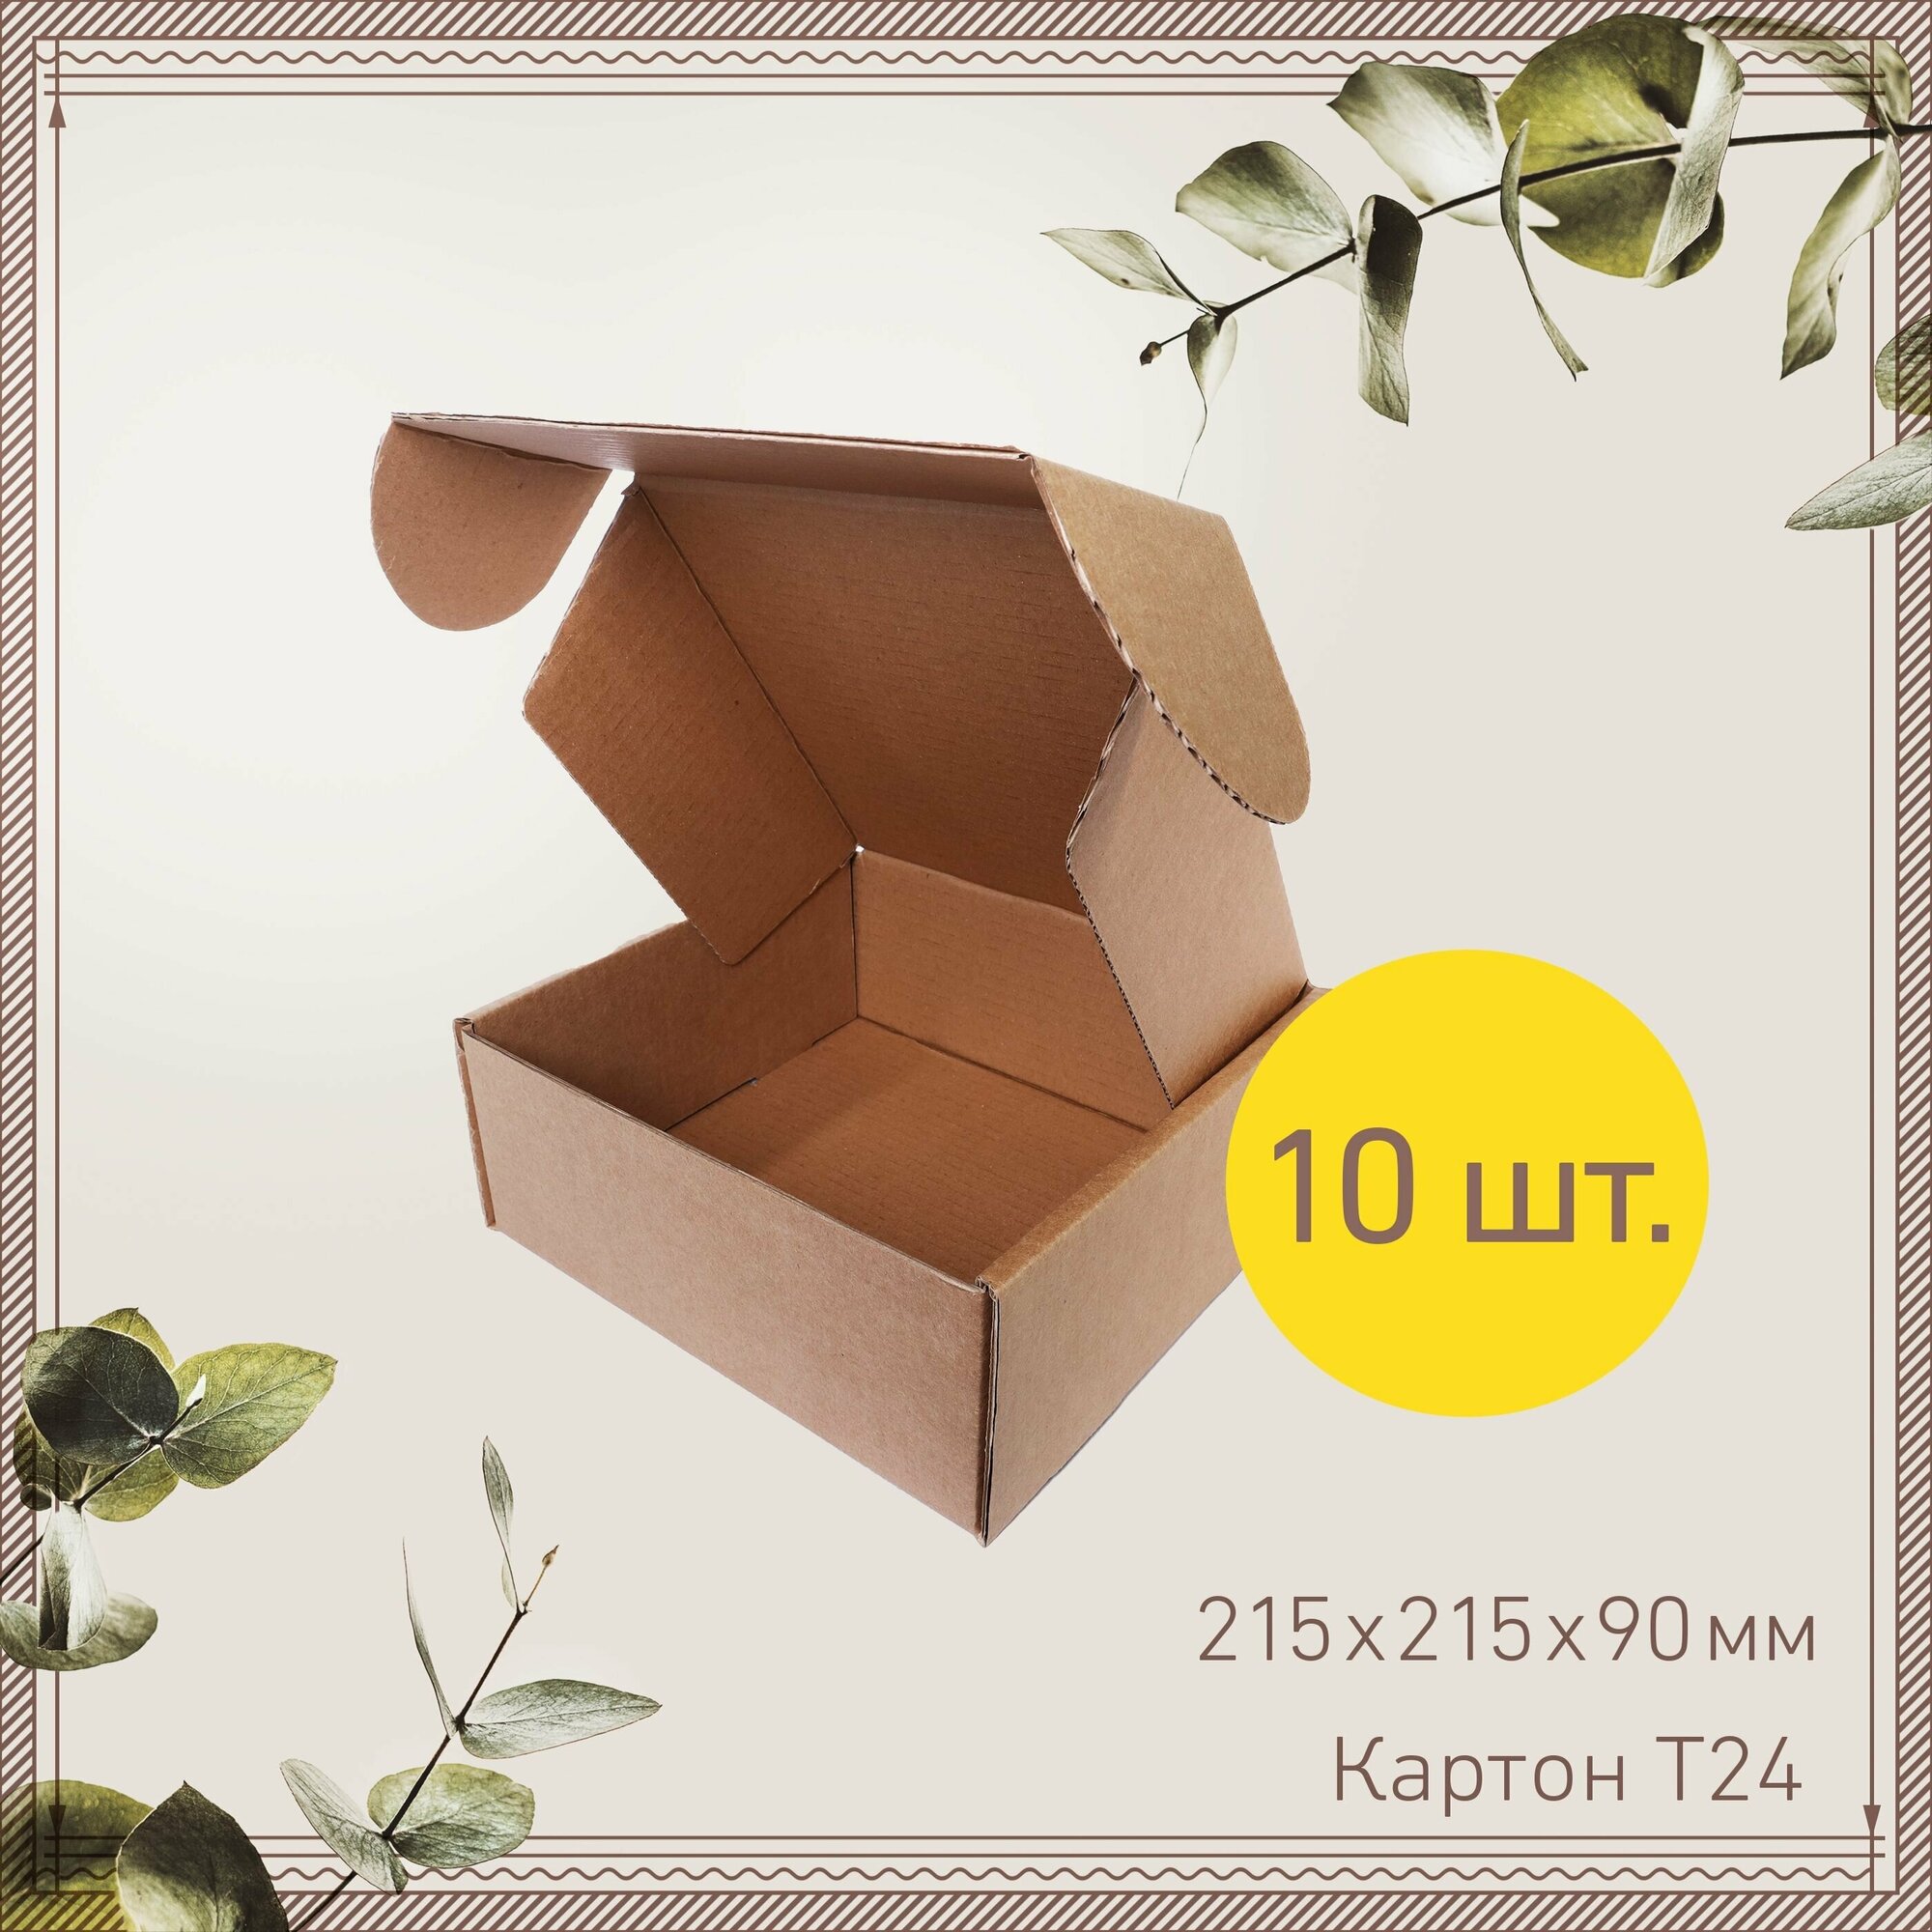 Картонная коробка шкатулка самосборная 21,5х21,5х9 см-10 шт. Упаковка для маркетплейсов, посылок. Гофрокороб 215х215х90 мм для хранения и переезда